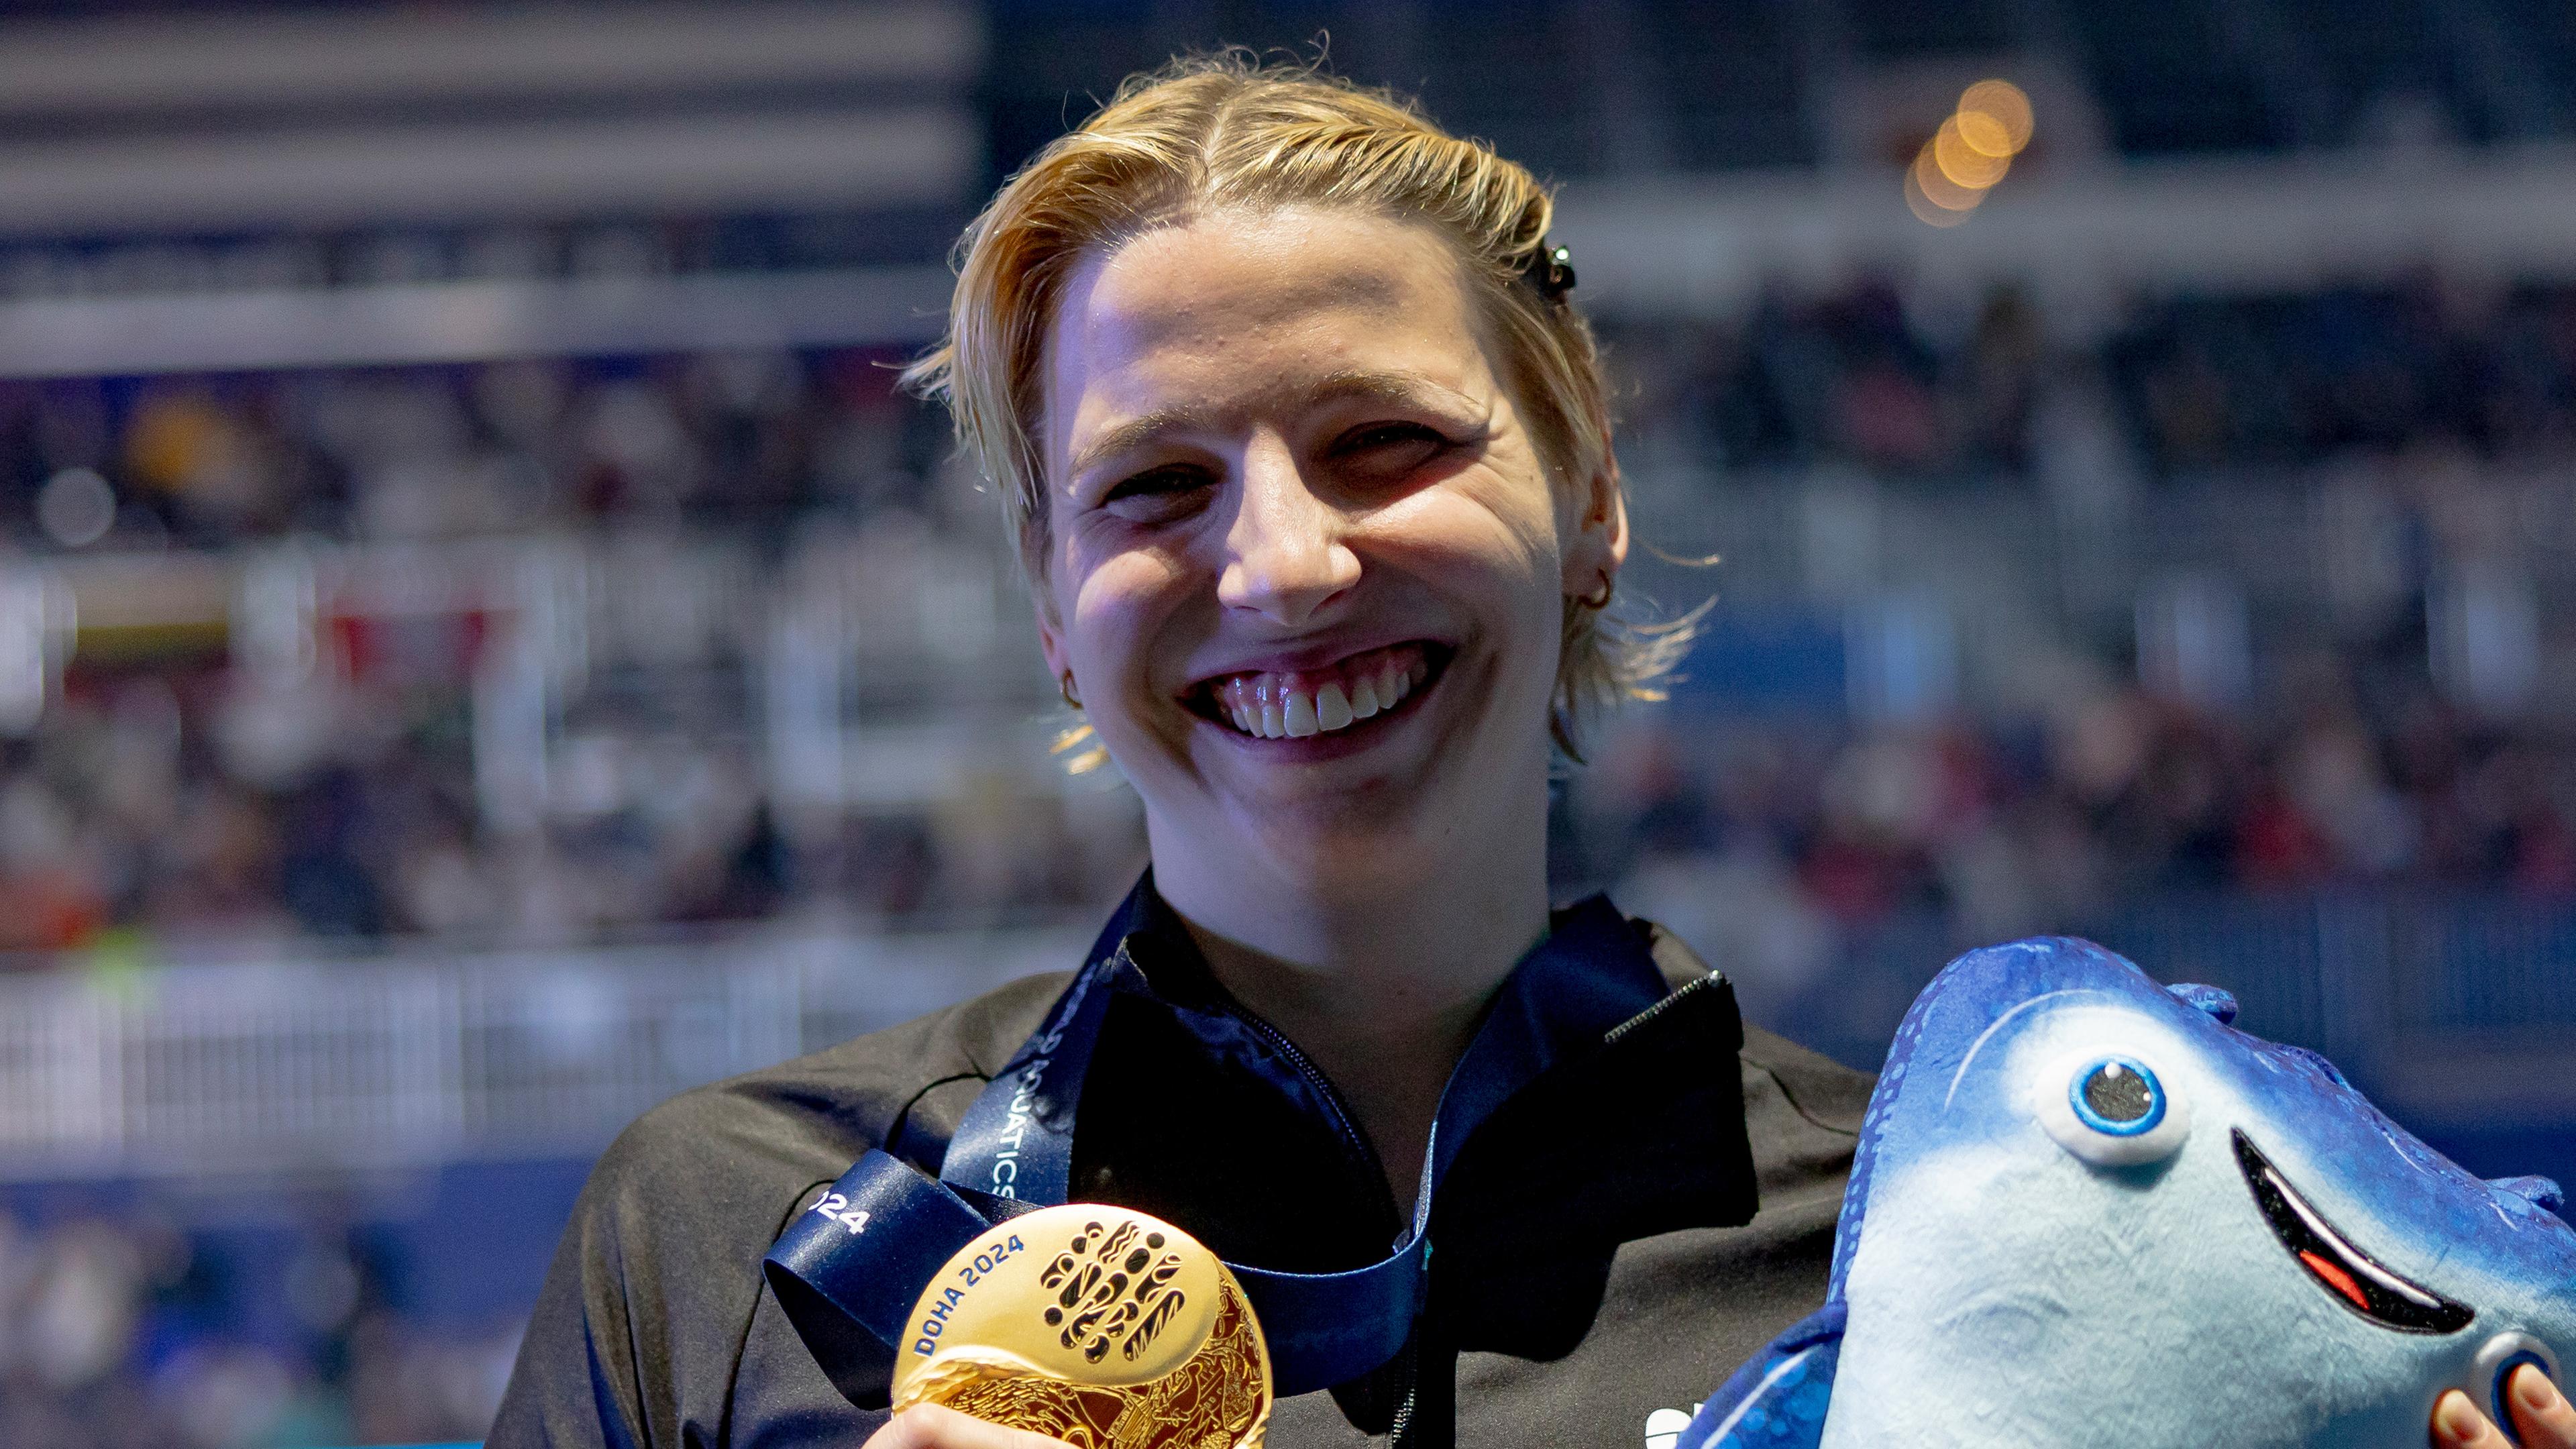 Schwimm-WM in Katar - Angelina Köhler